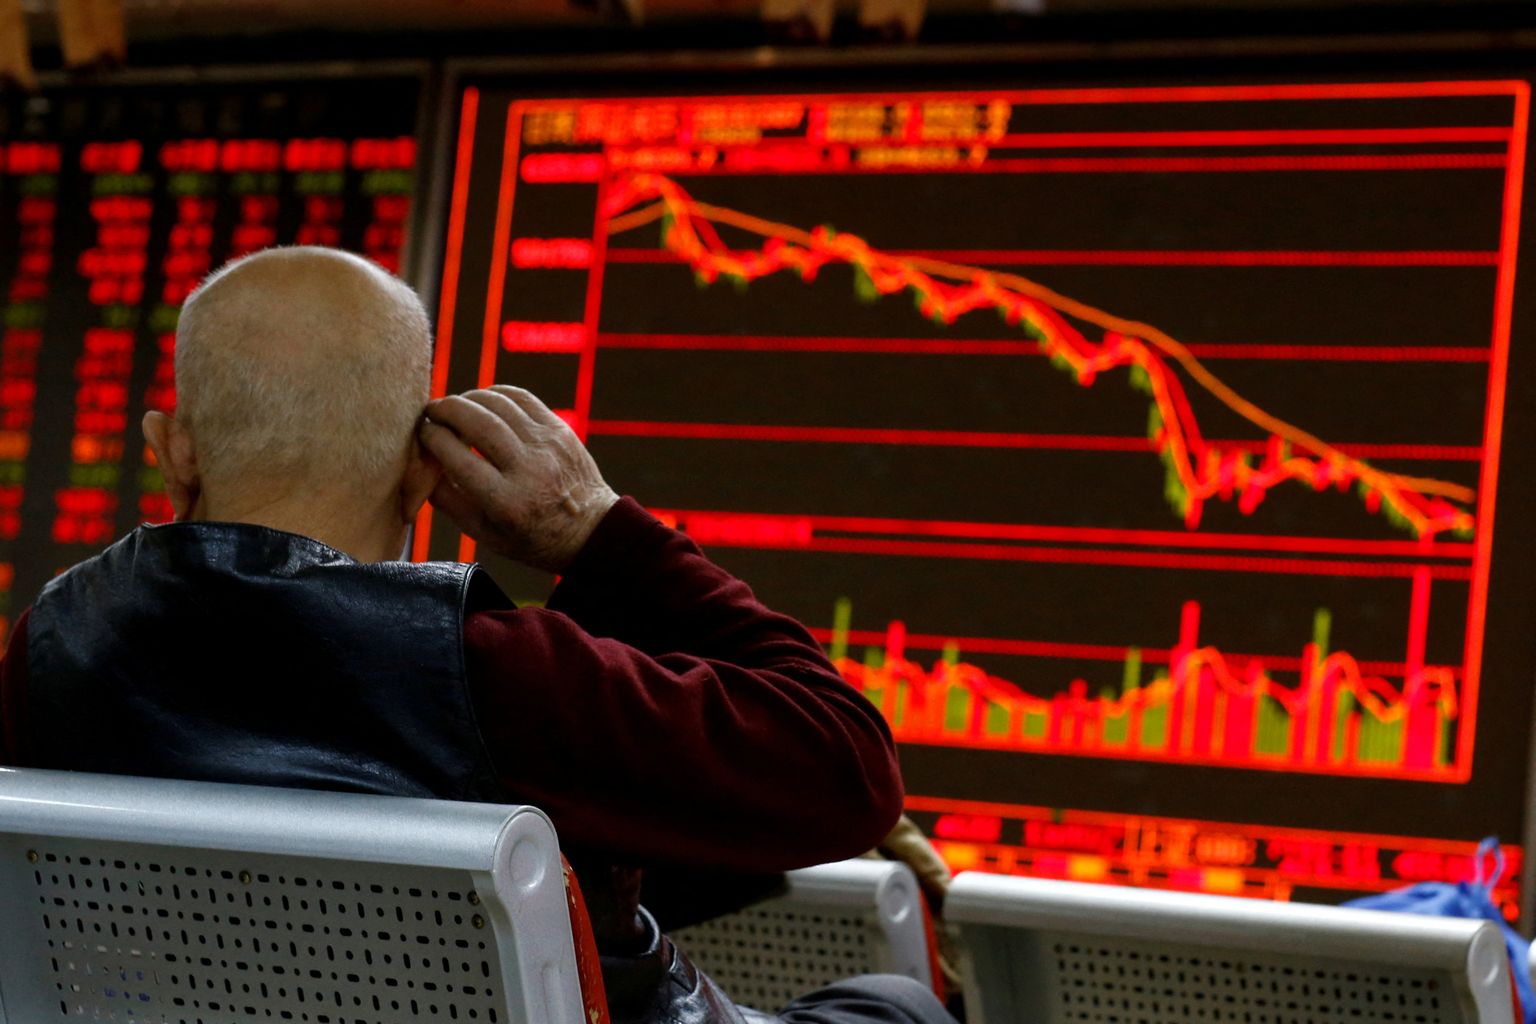 Hiina investor vaatab kukkuvat aktsiaturgu